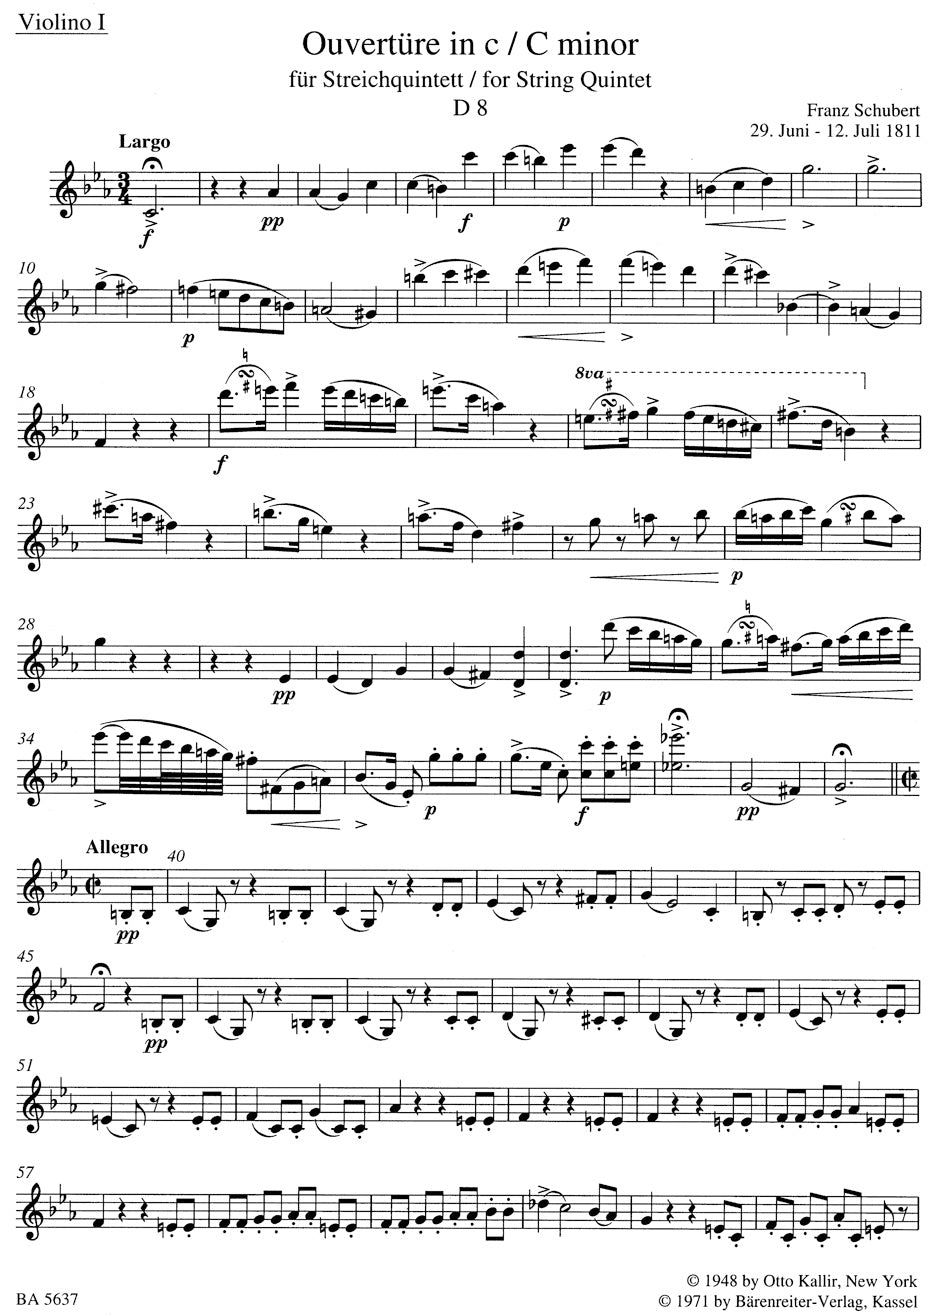 Schubert Ouvertüre (Quintet) in c minor D 8